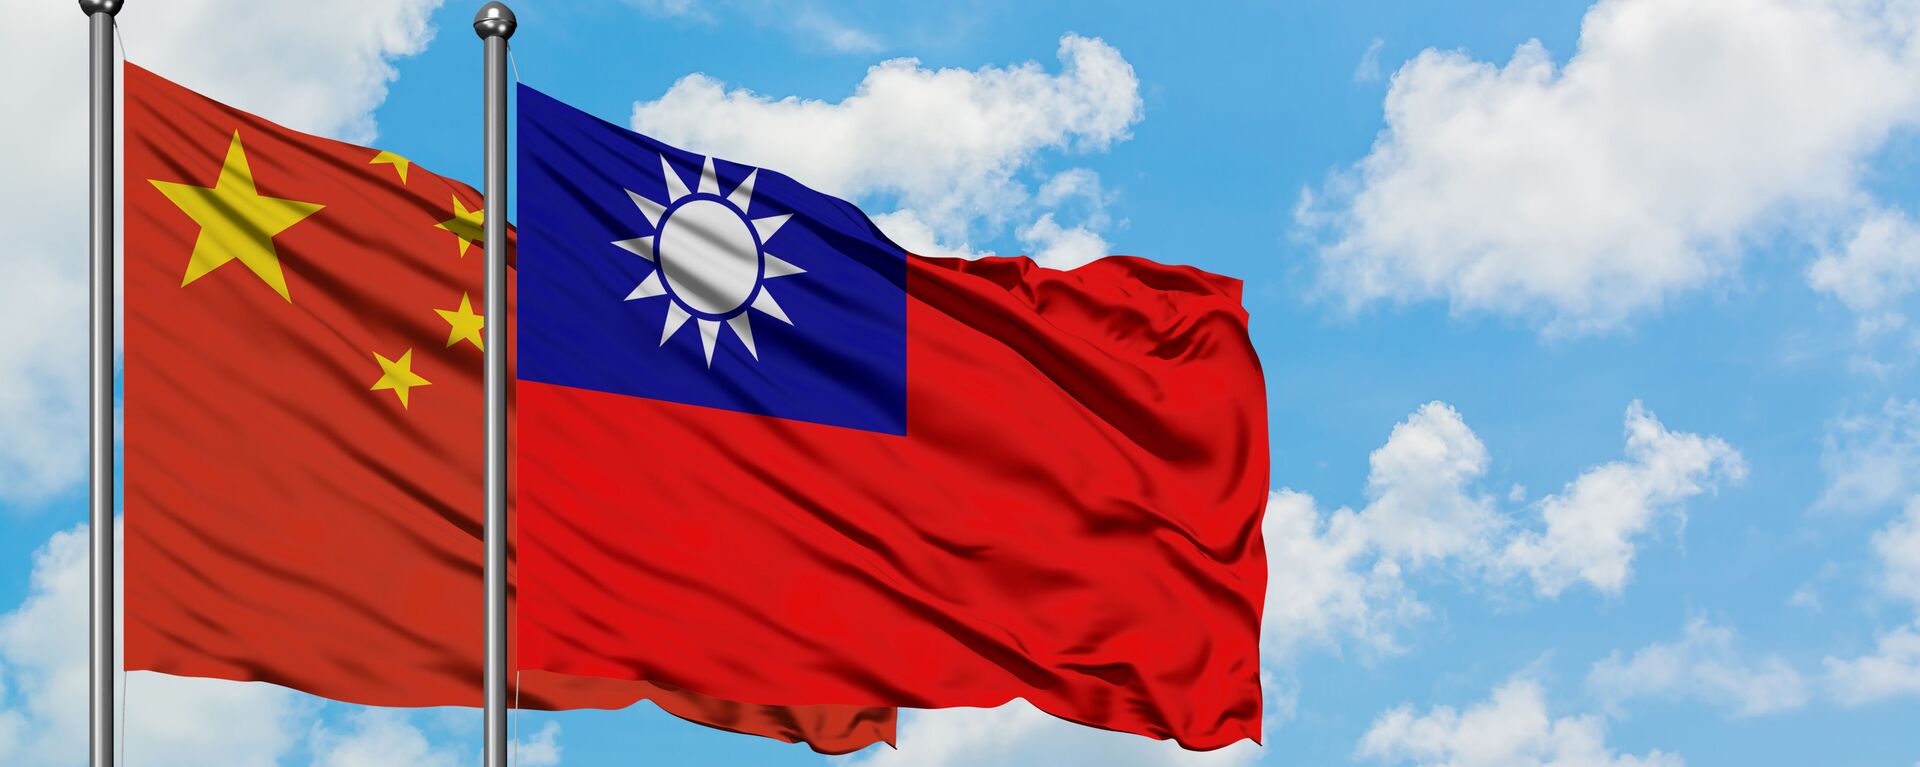 Флаги Тайваня и Китая - Sputnik 日本, 1920, 10.11.2021